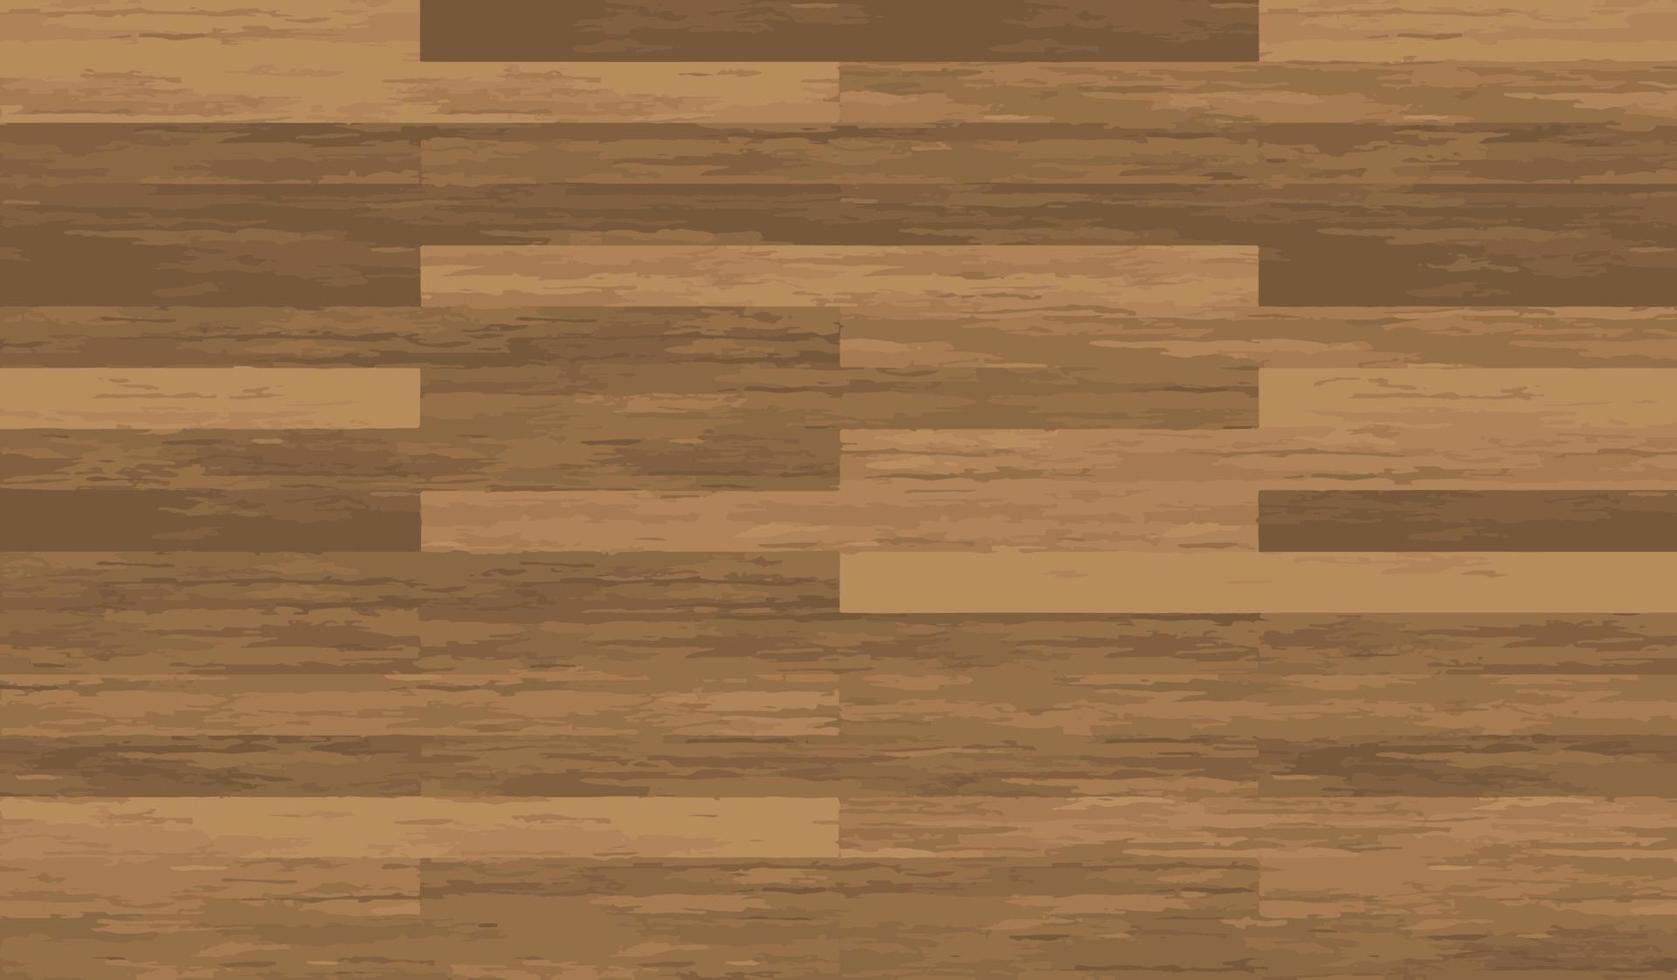 Wooden Texture Floor Seamless